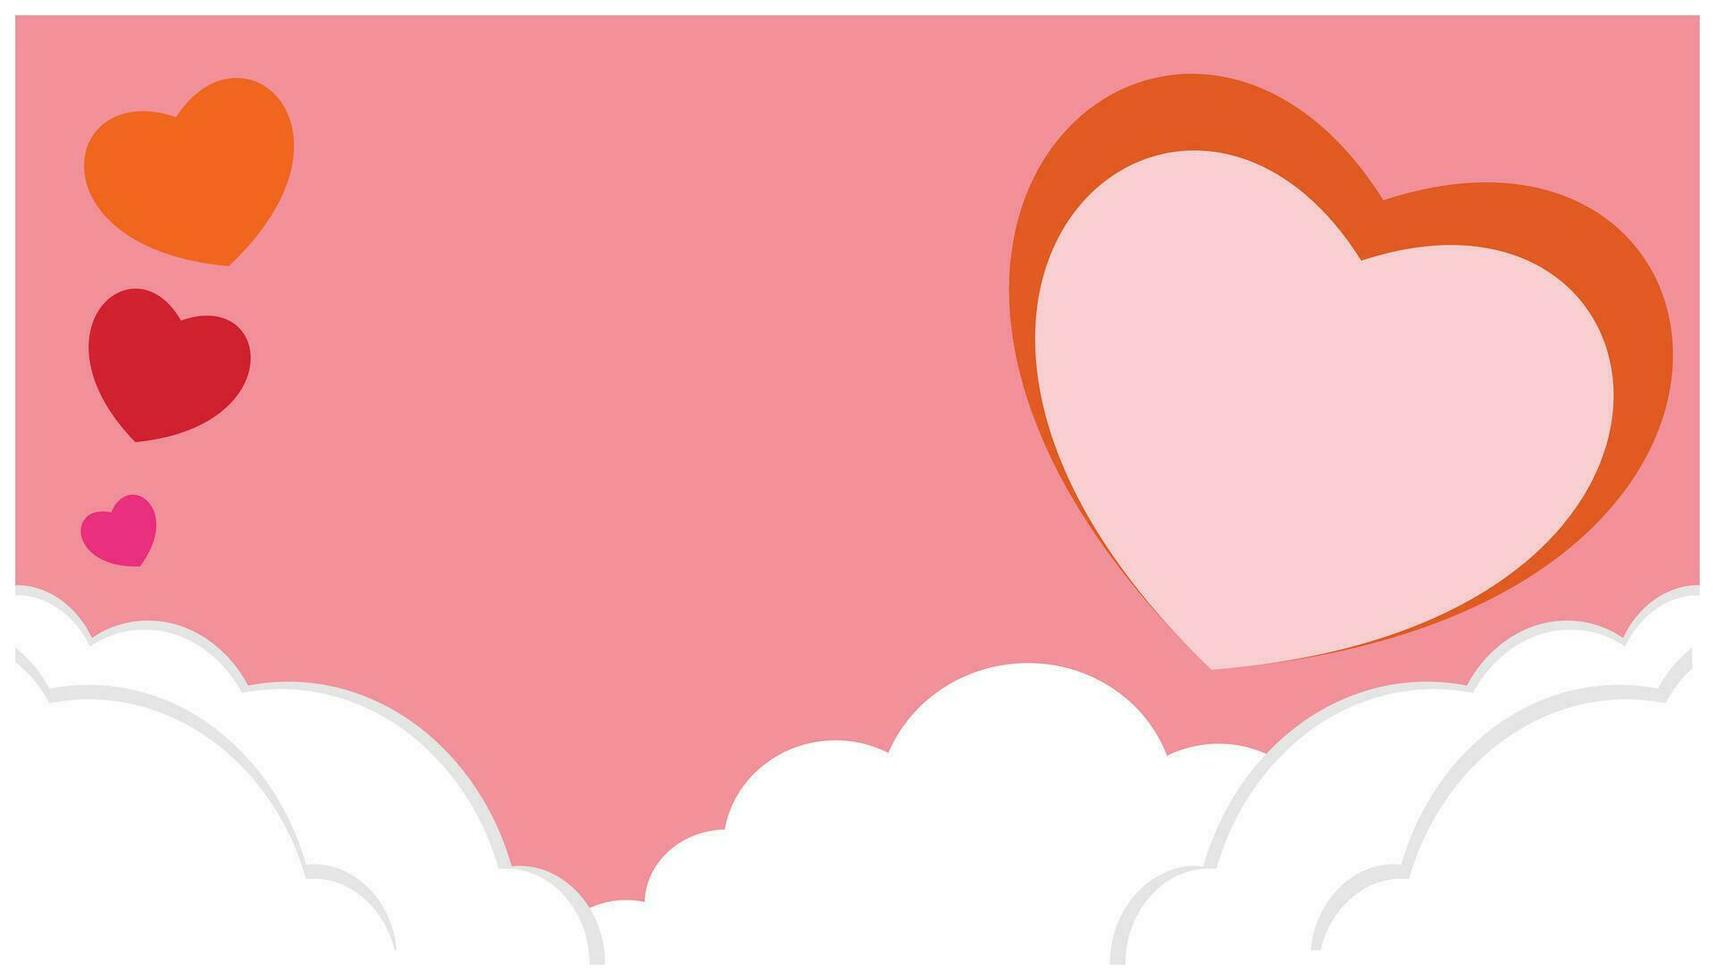 Valentijnsdag dag achtergrond met rood en oranje harten. vector illustratie. Internationale evenement achtergrond ontwerp element. ontwerp elementen voor Valentijnsdag dag